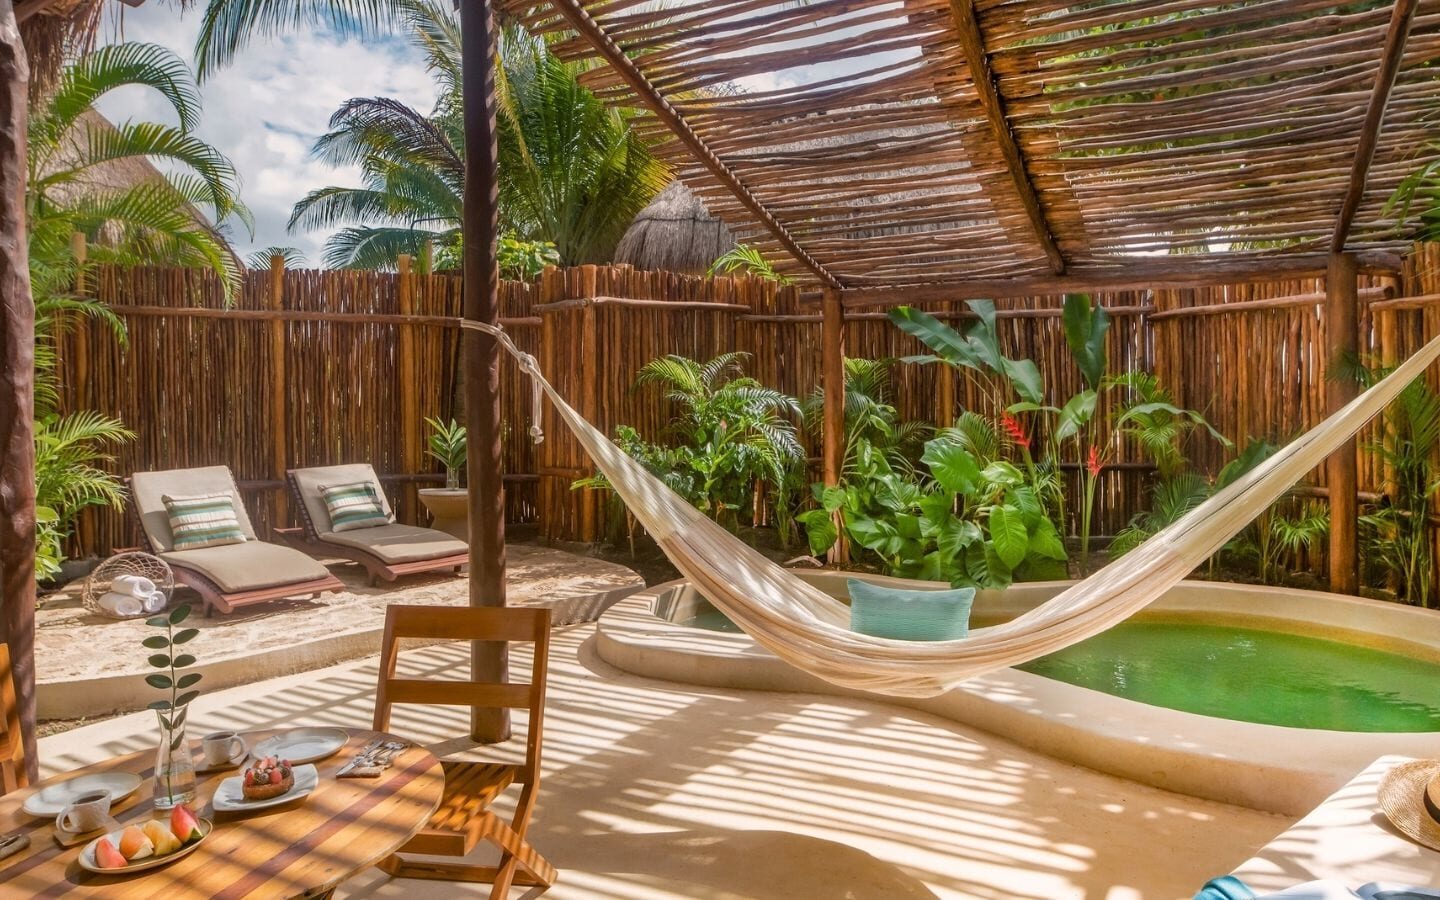 Viceroy Riviera Maya villa (Mexico resorts for couples)